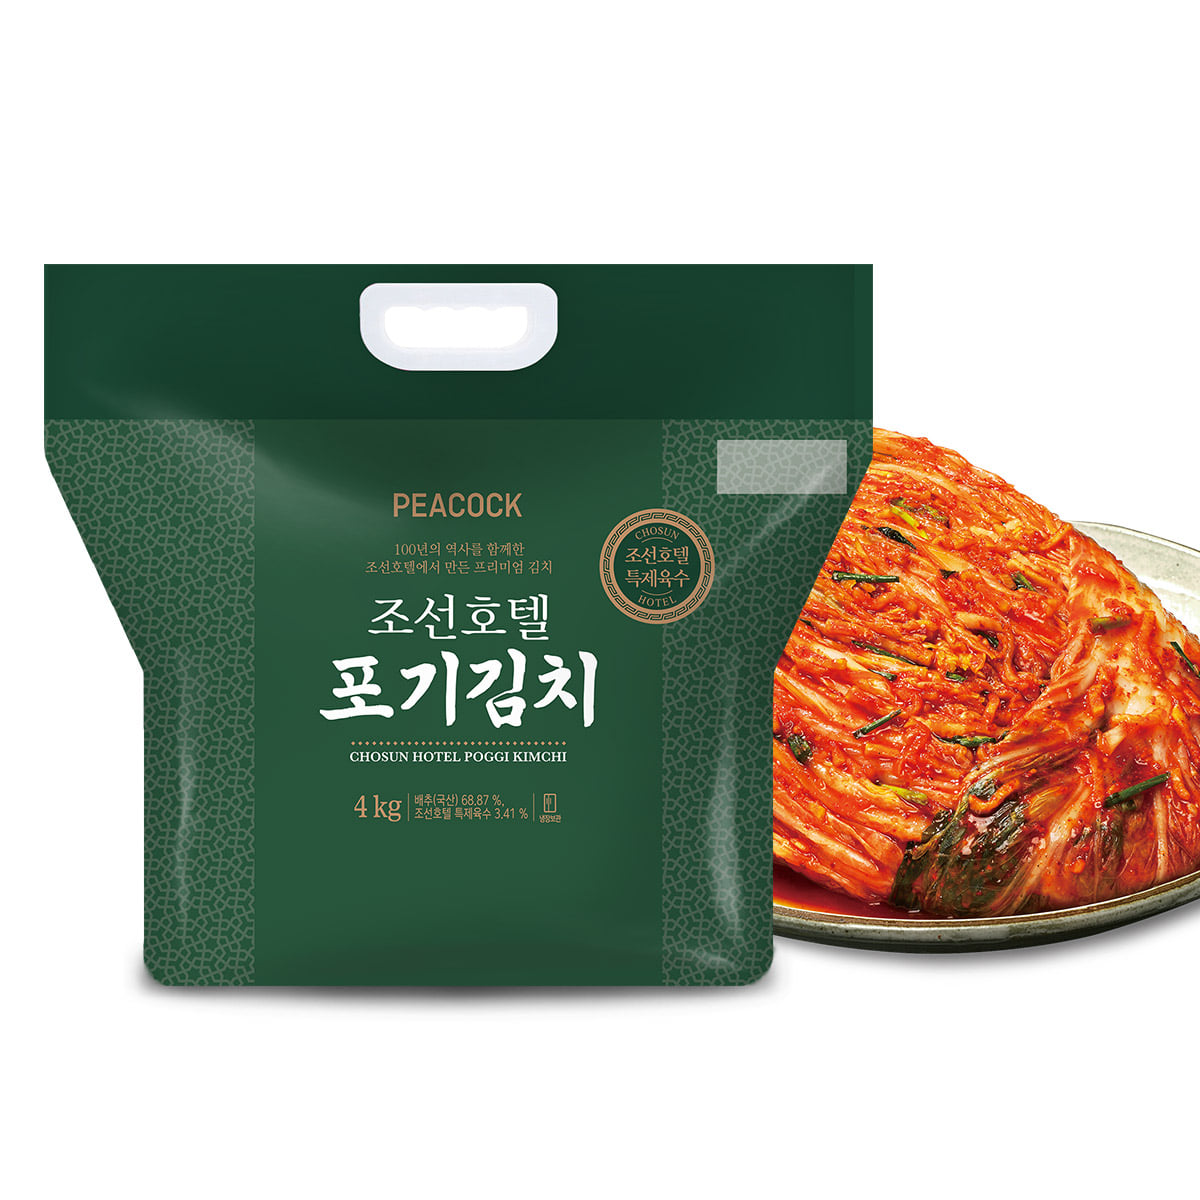 피코크 조선호텔 포기김치 4kg+남도식김치 1.9kg+맛김치 1.9kg